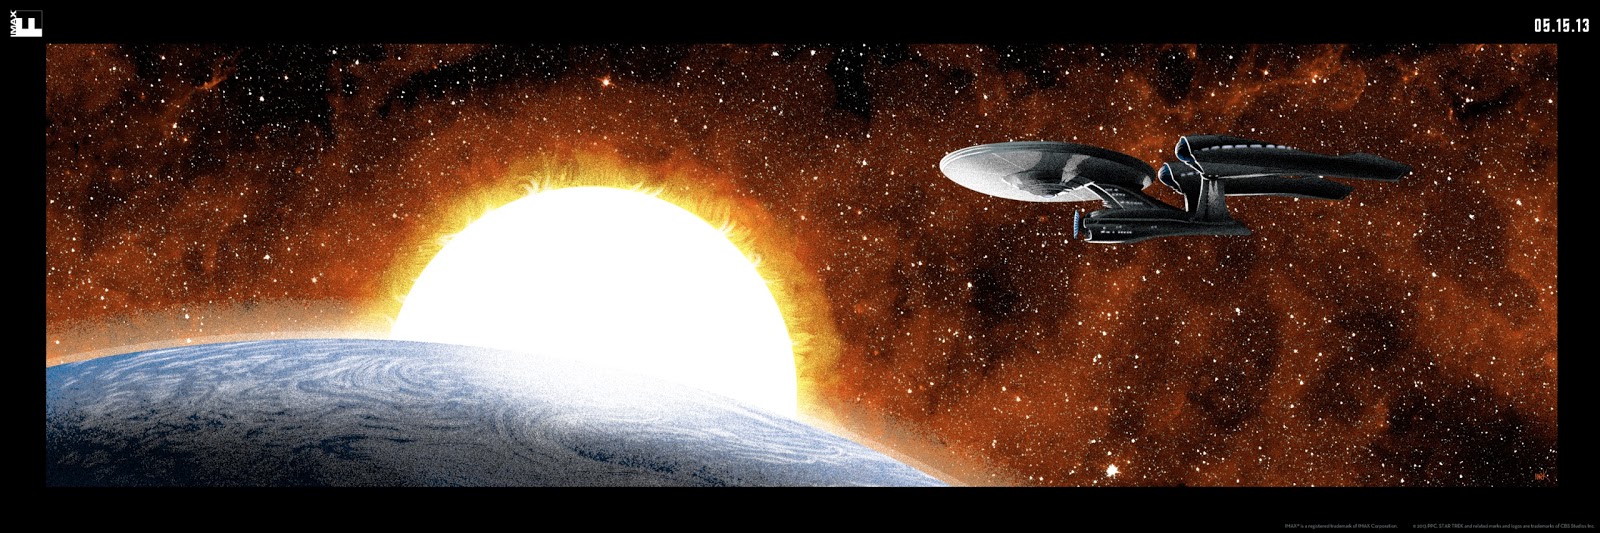 Star-Trek-Into-Darkness+REGULAR.tif